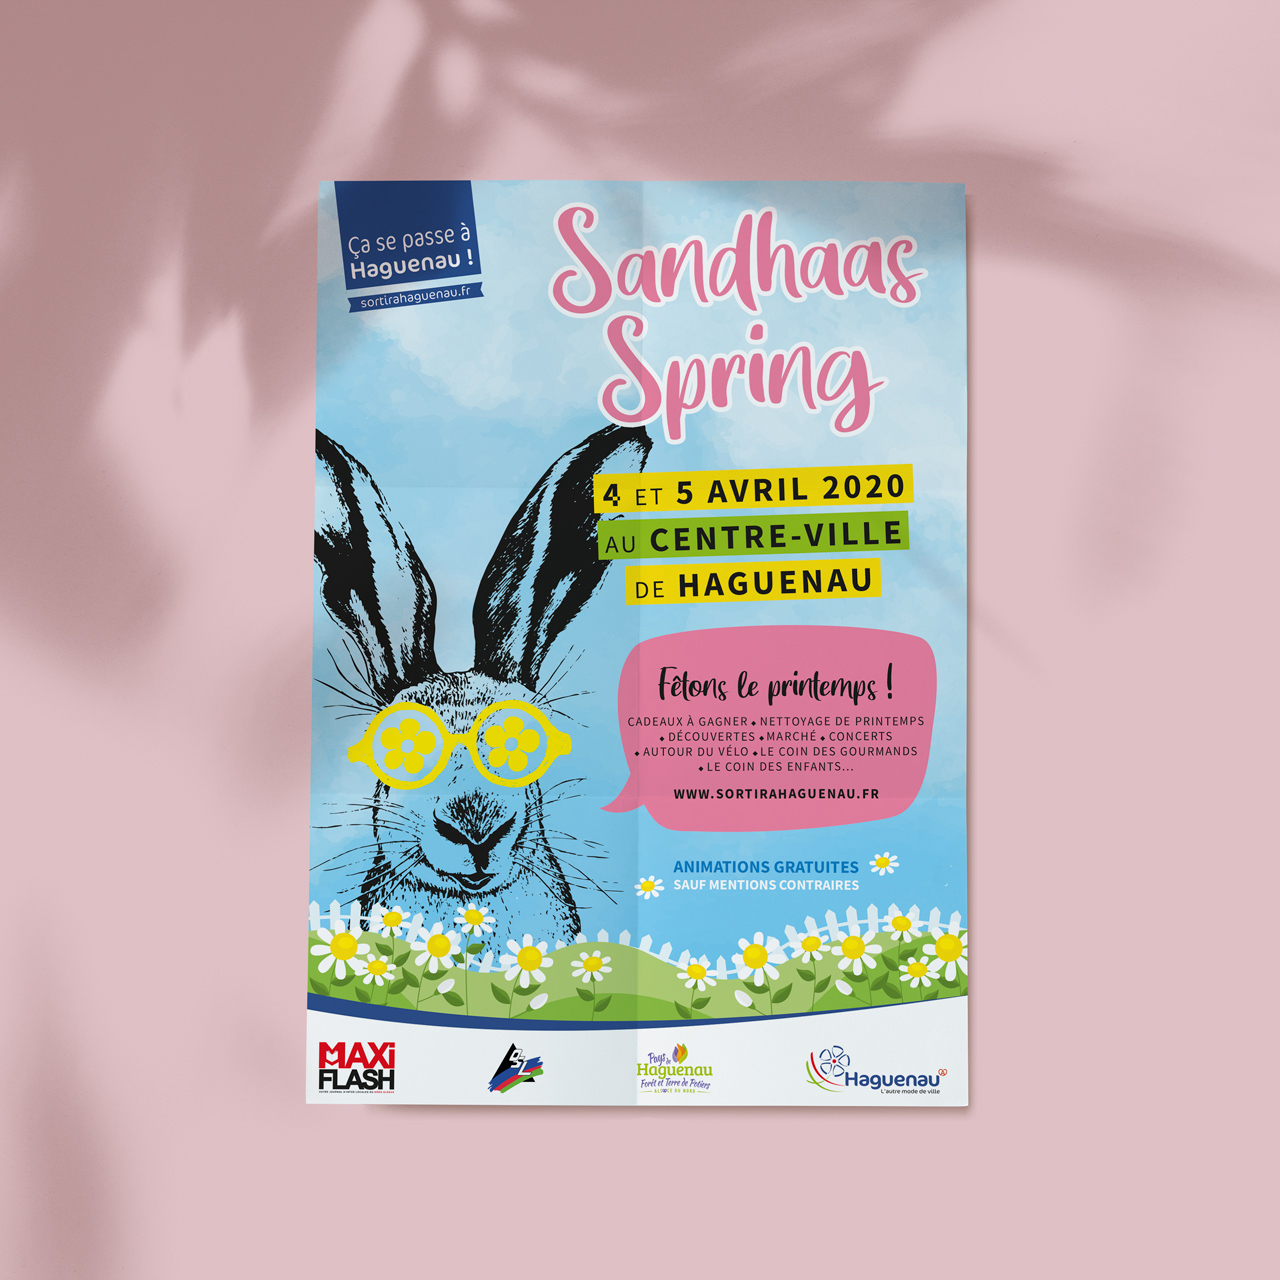 Sandhaas Spring 2020